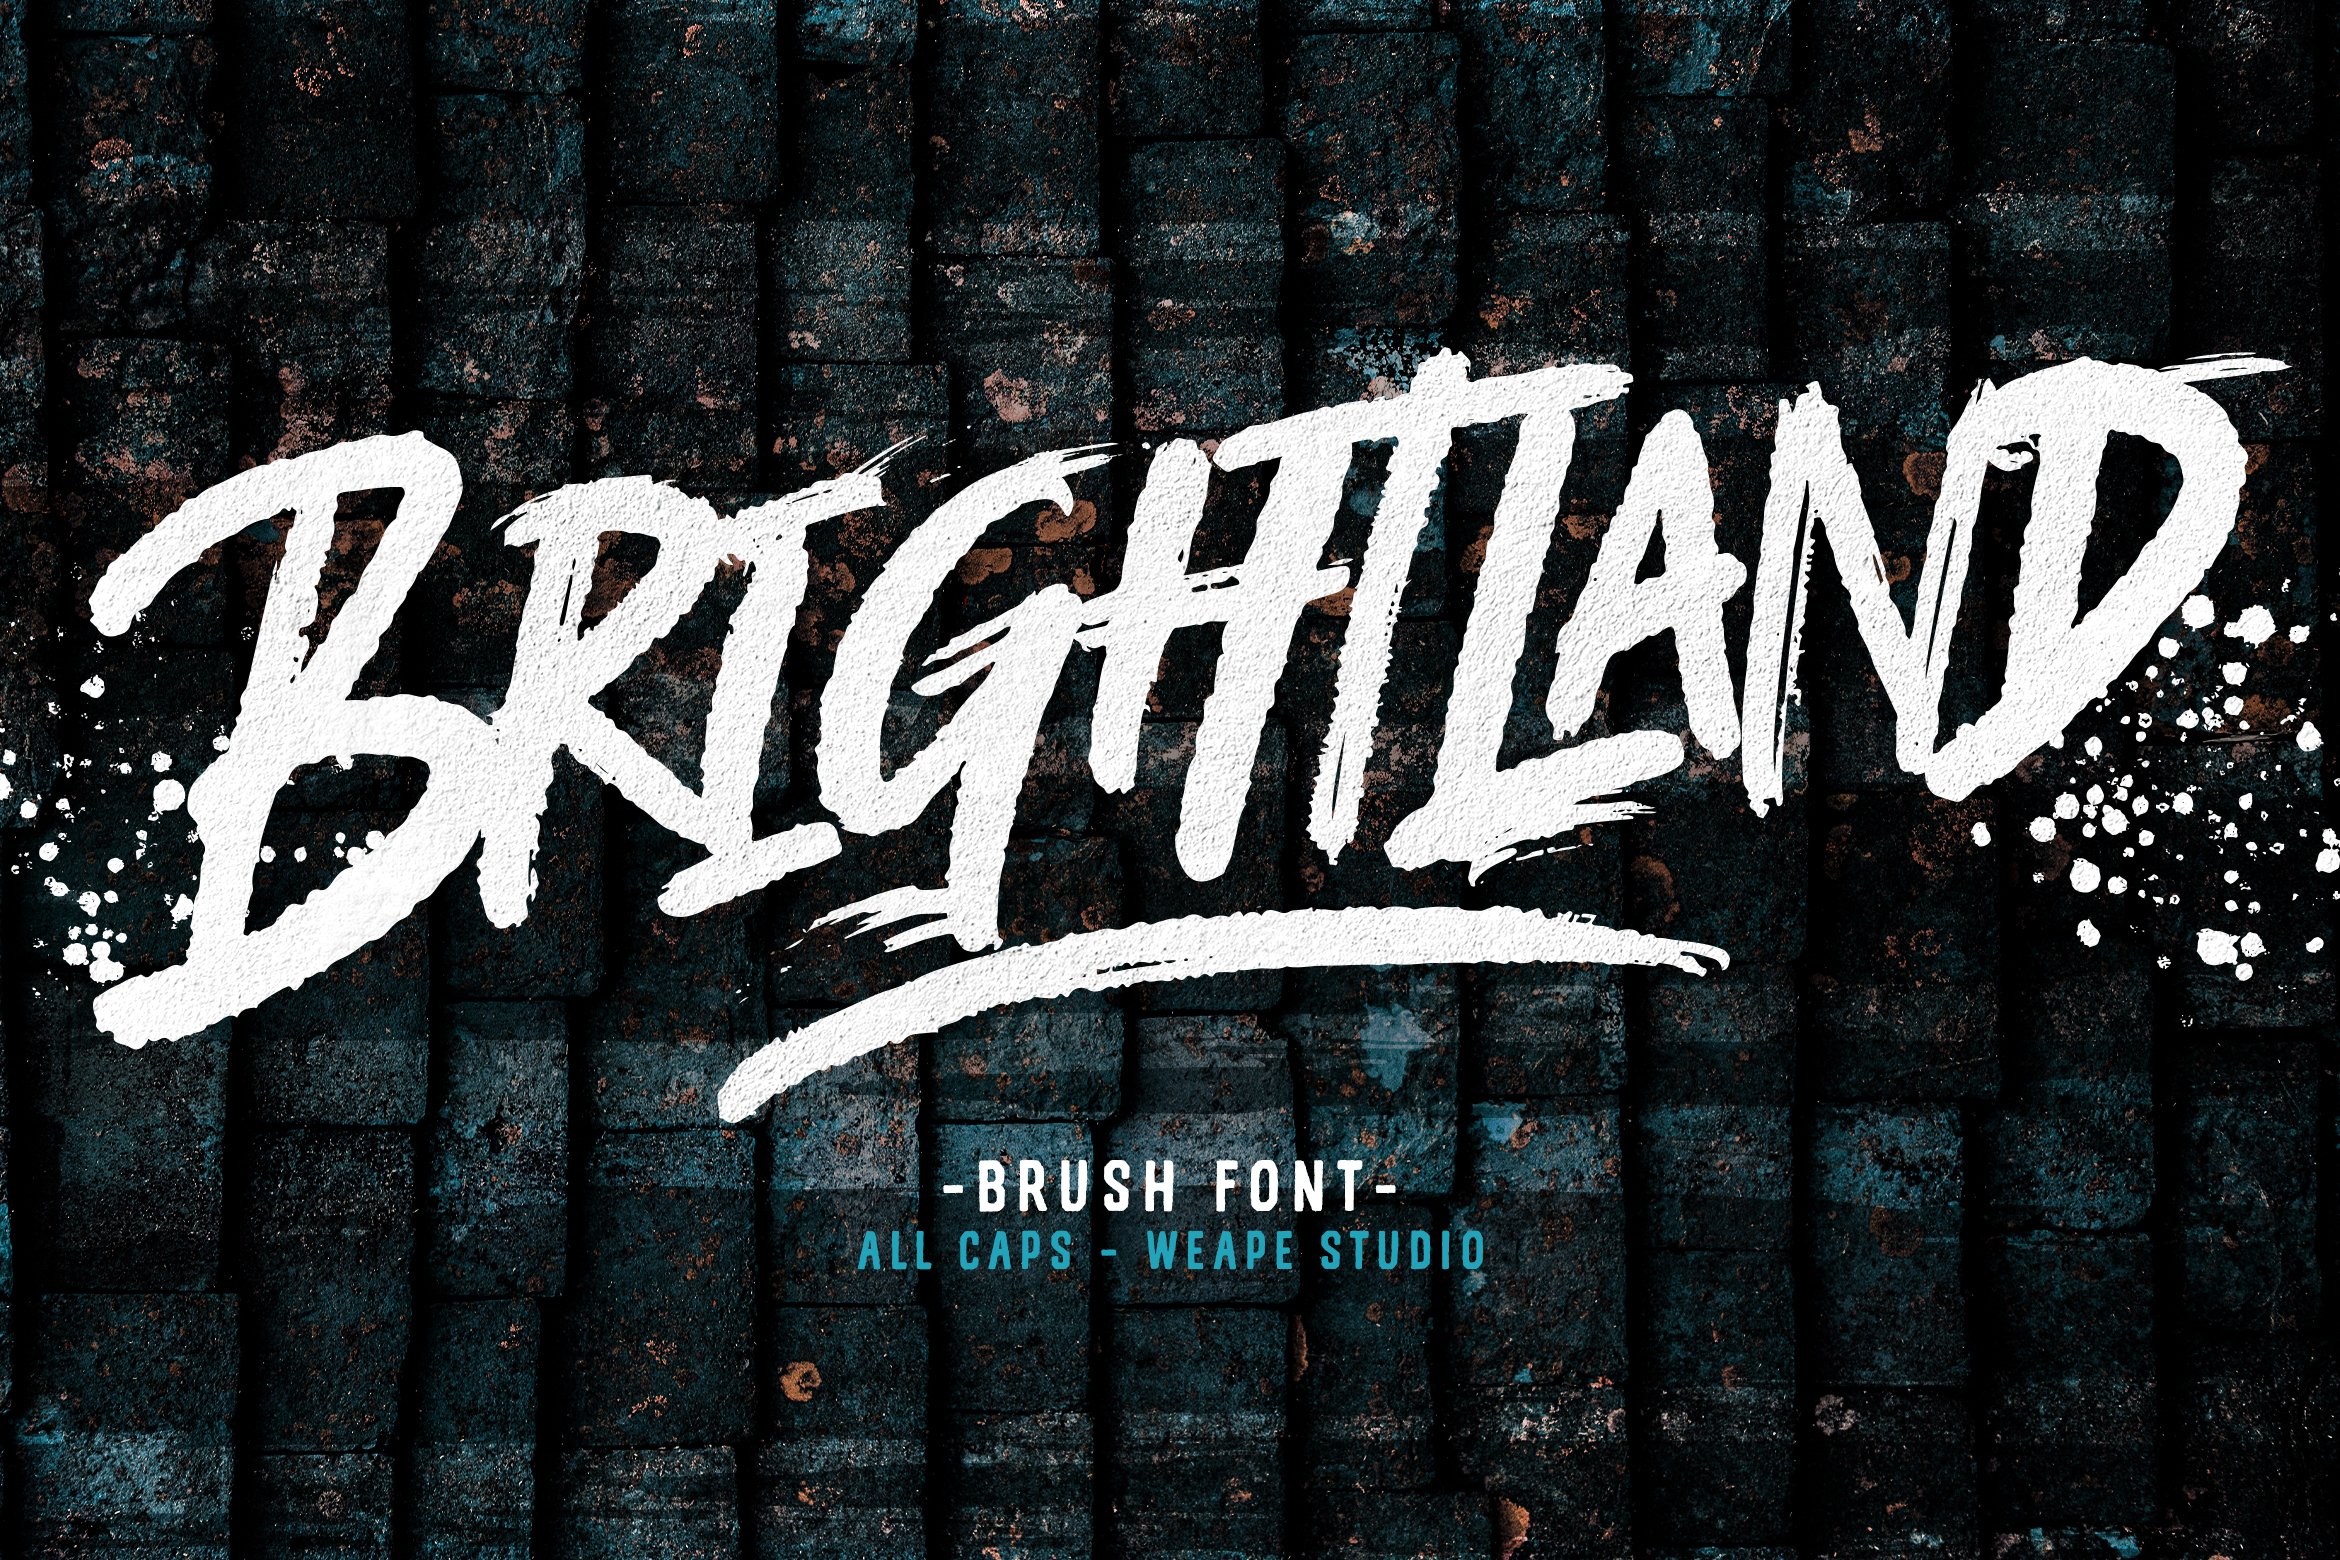 Brightland cover image.